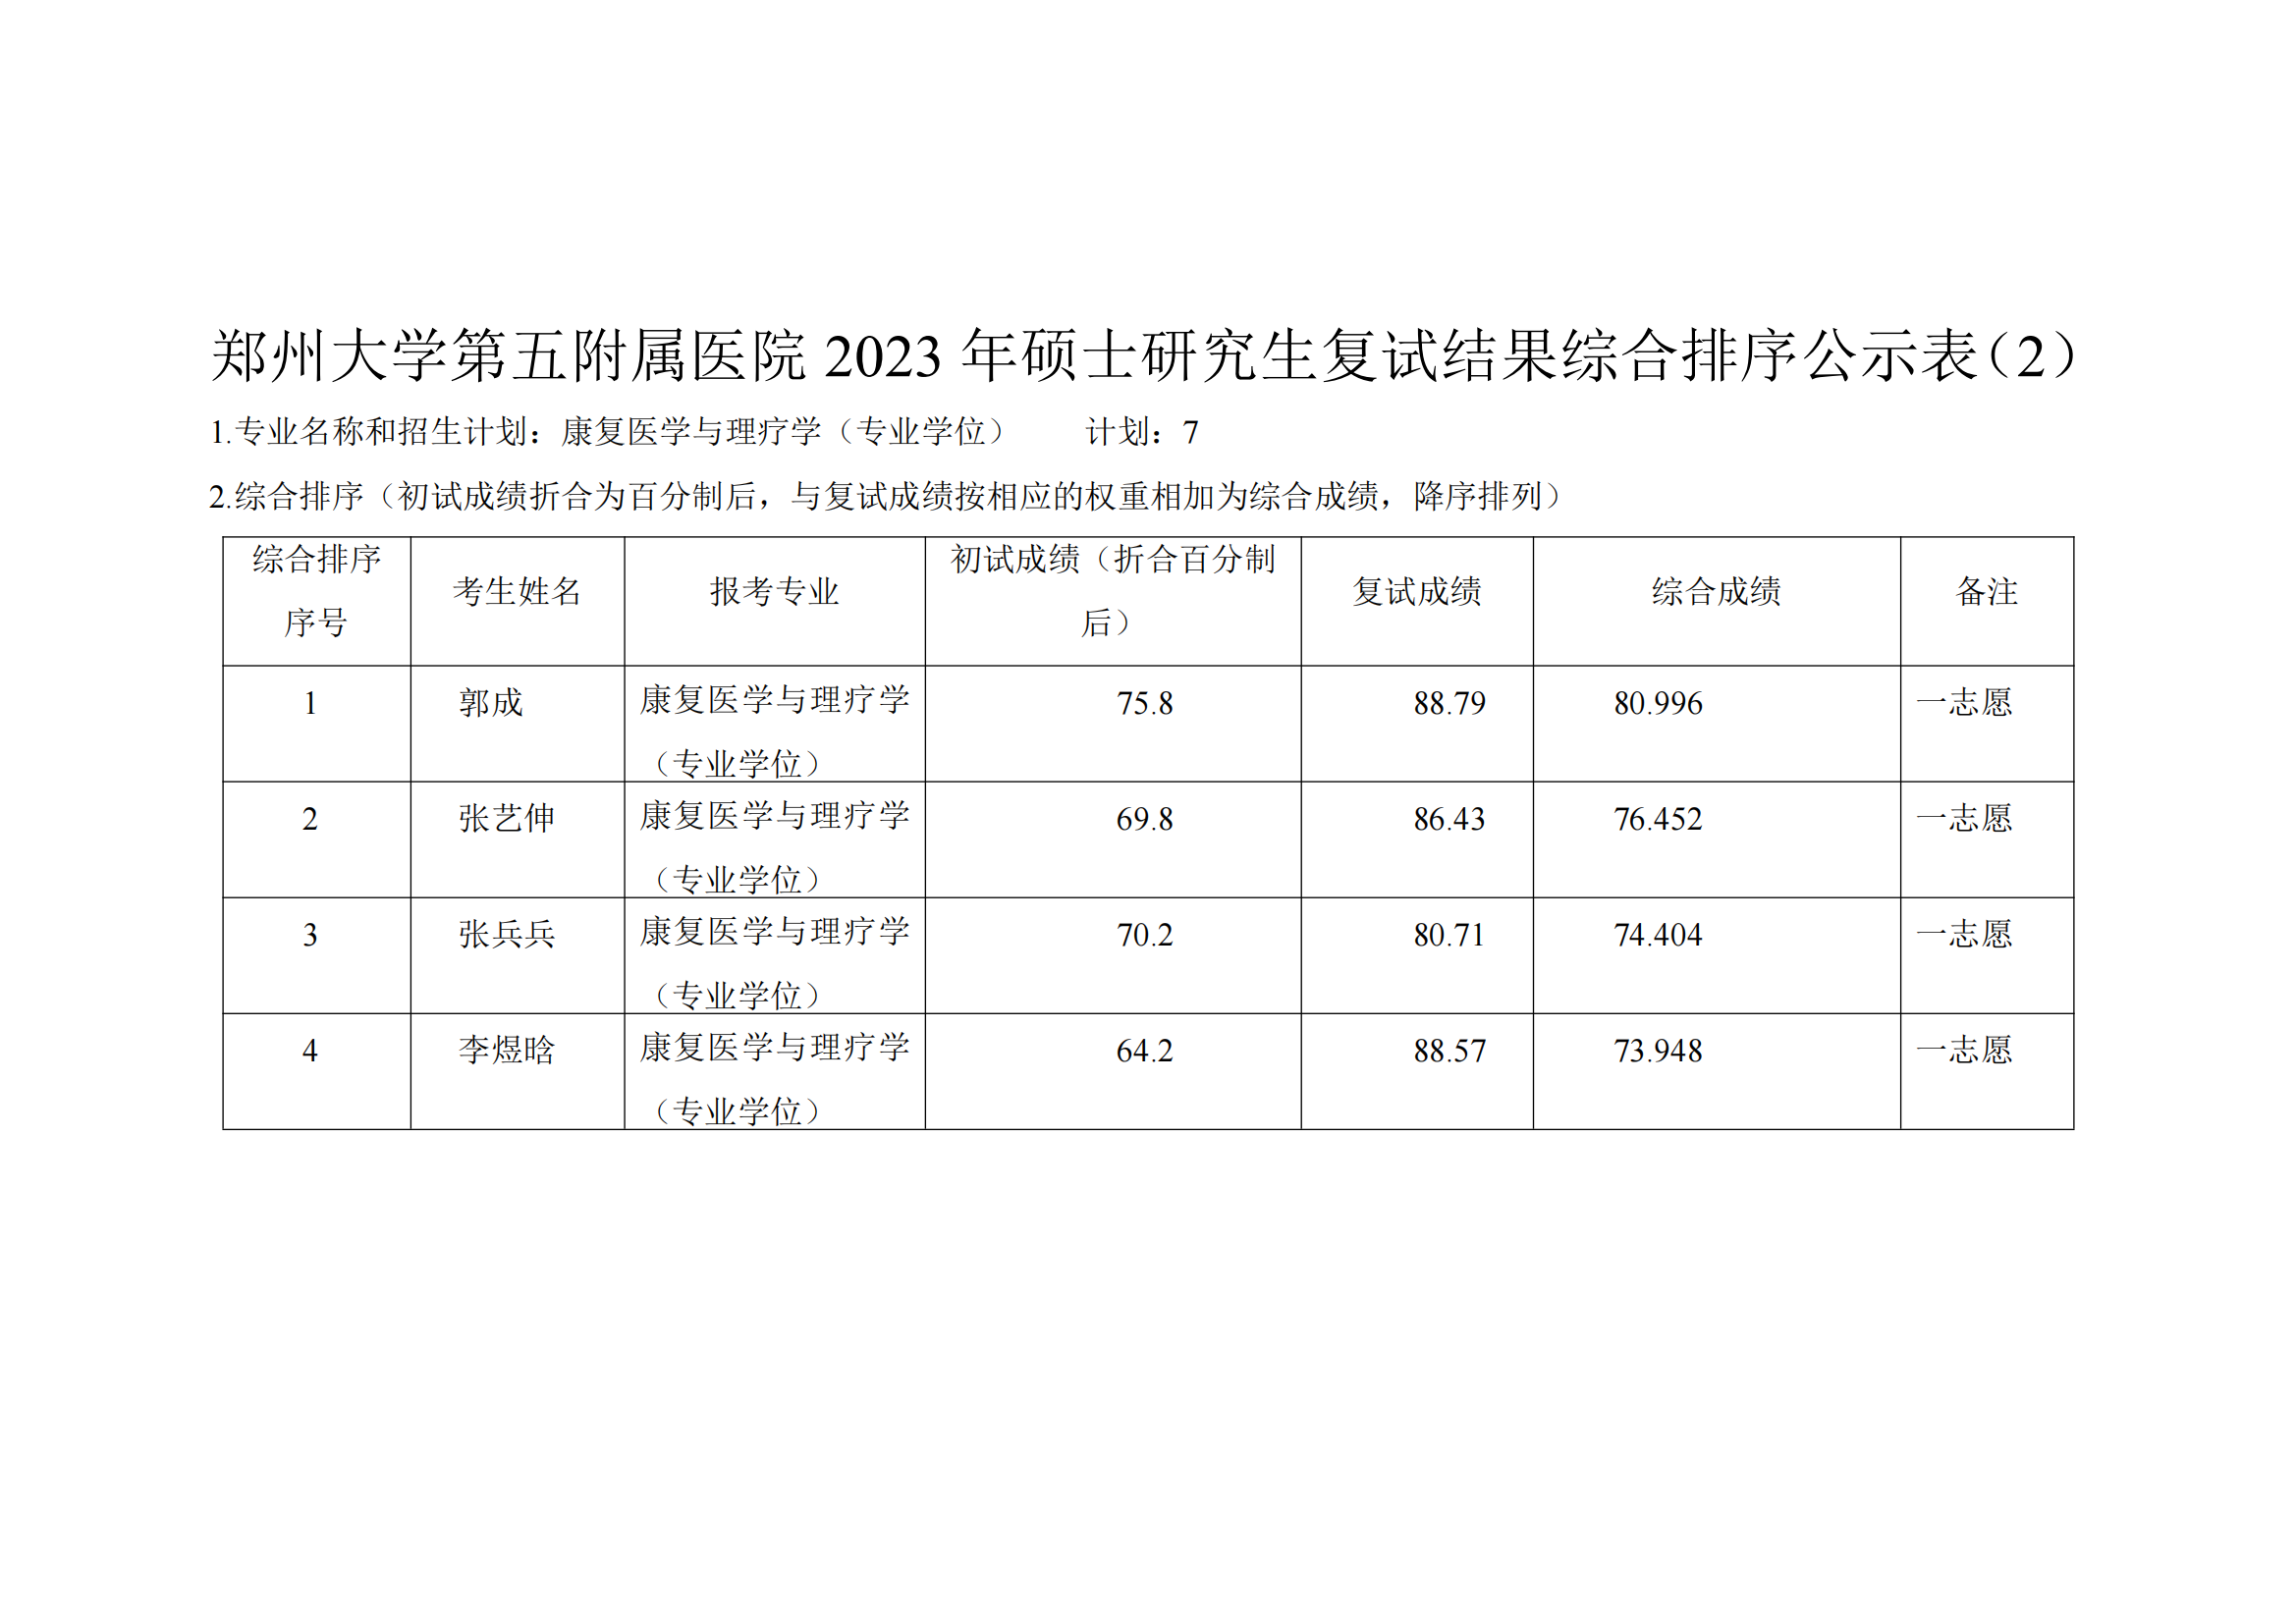 郑州大学第五附属医院2023年硕士研究生复试结果综合排序公示表（2）_00.png